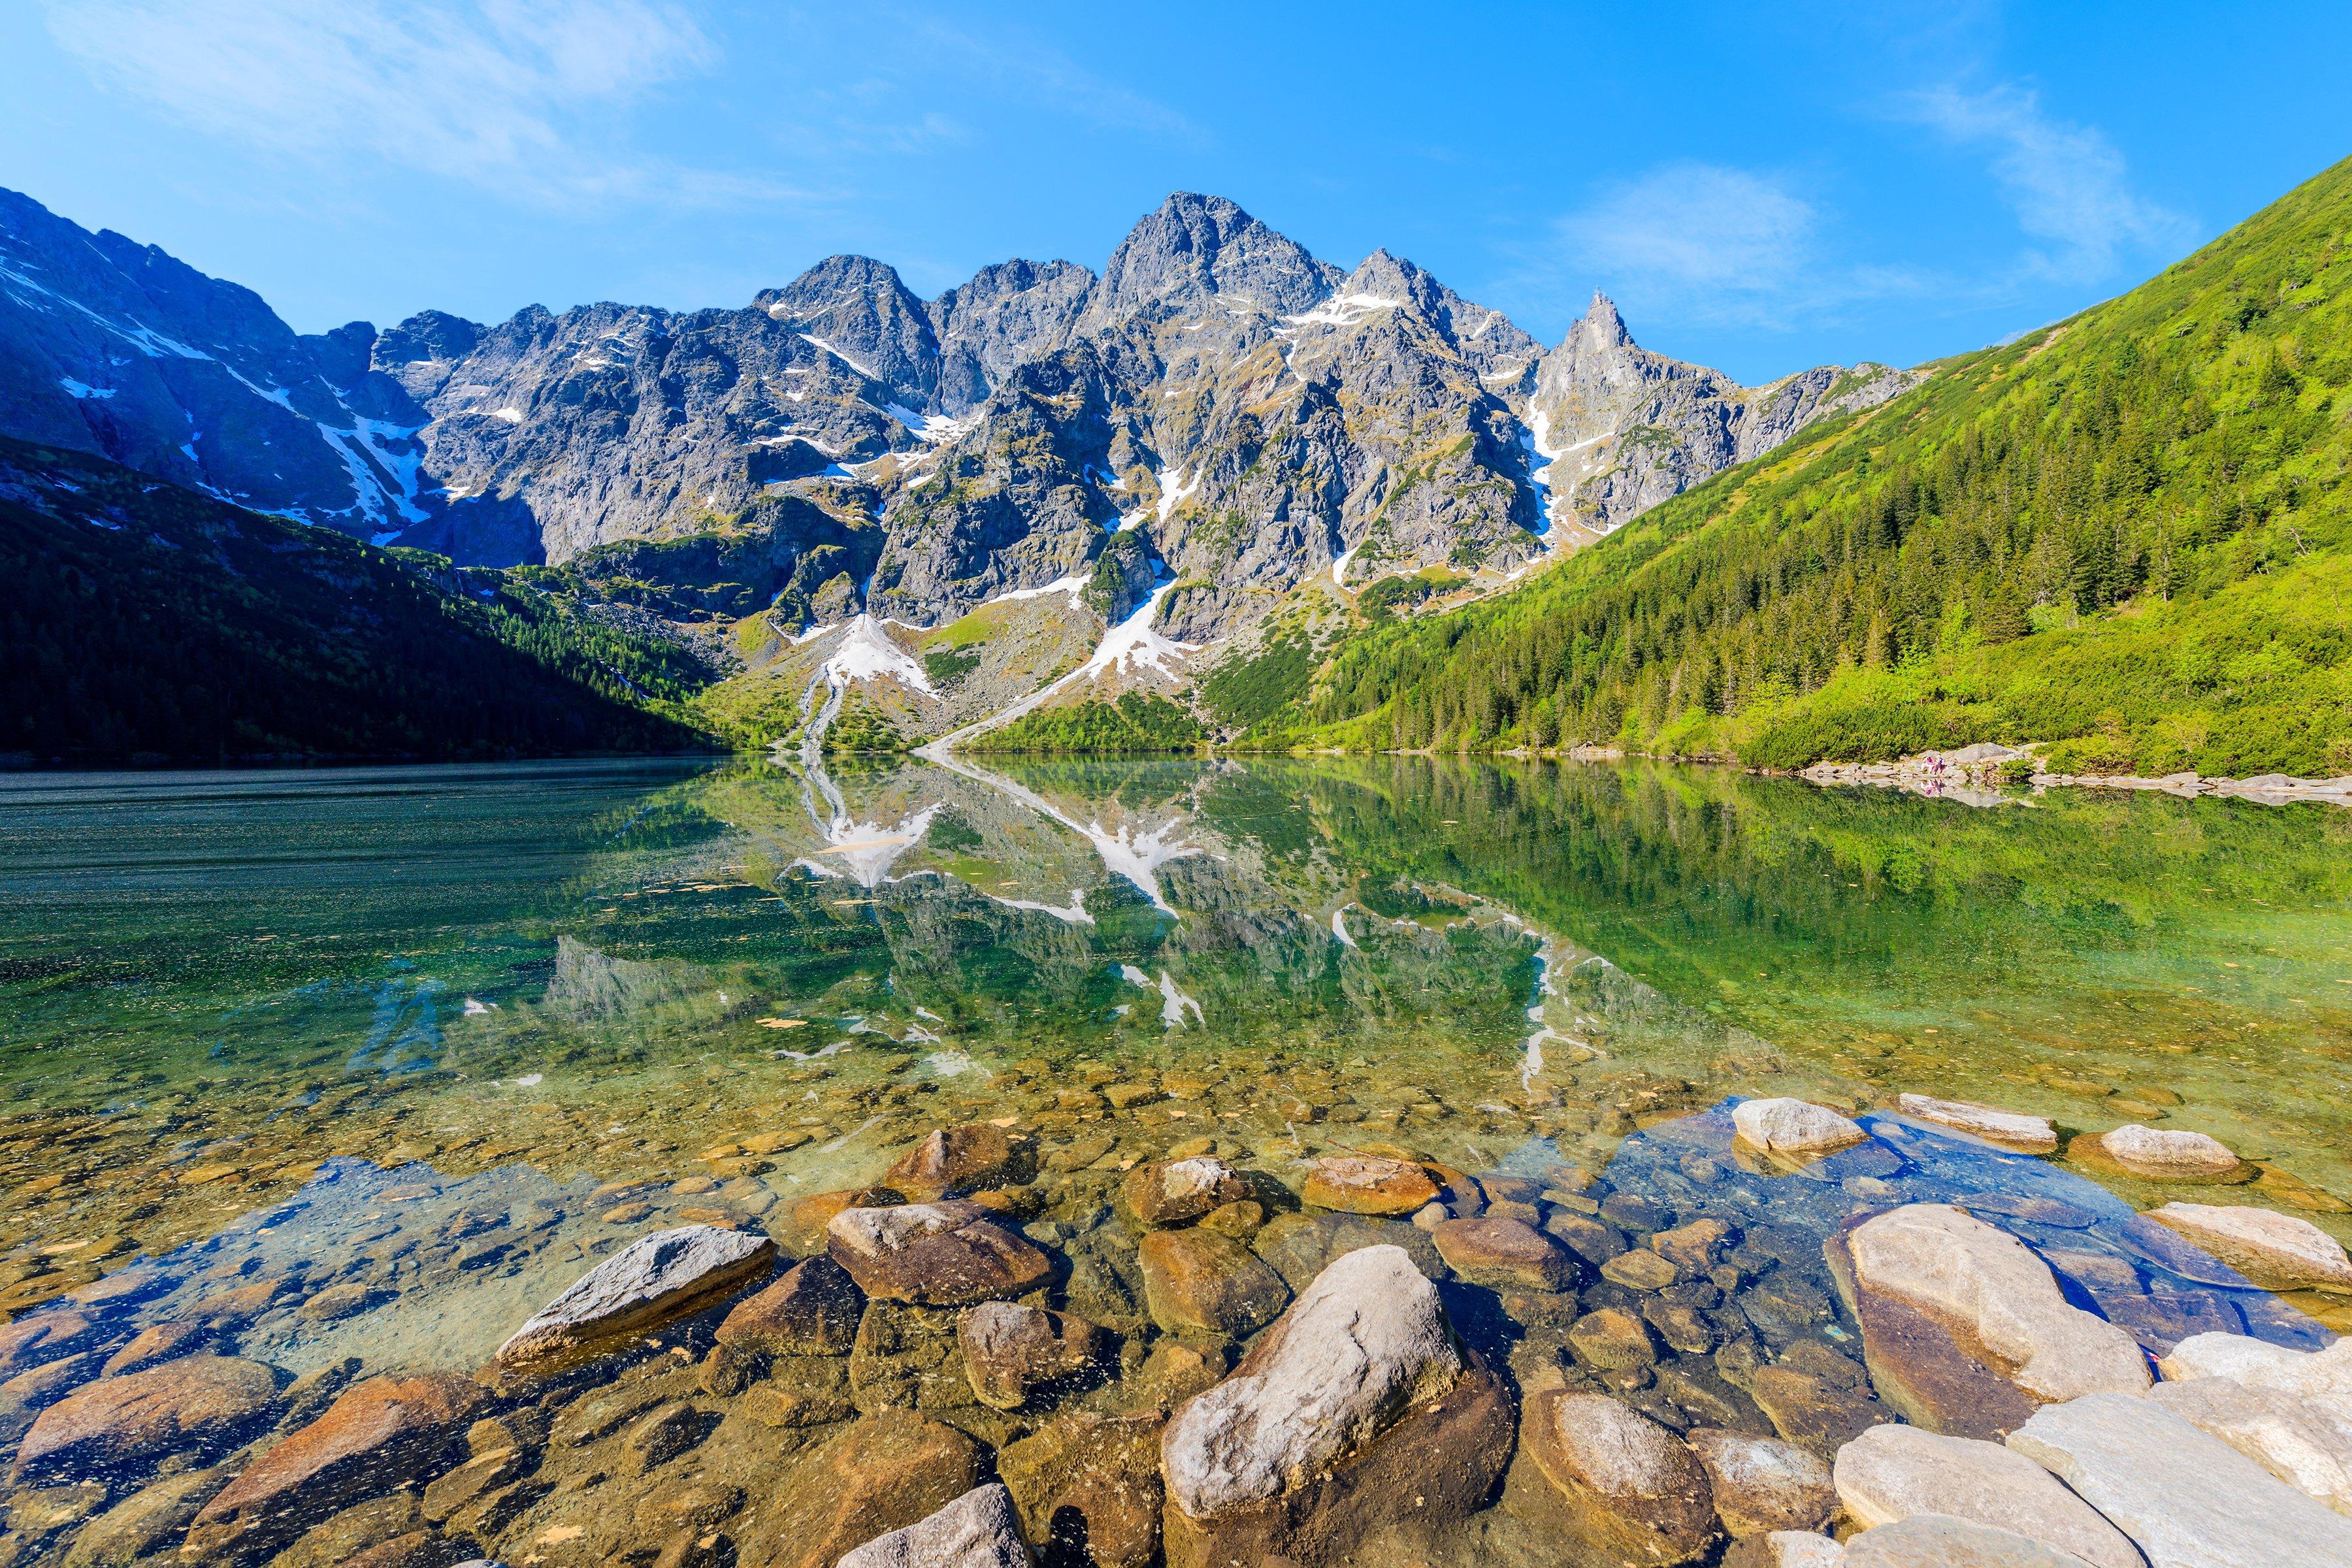 3600 x 2400 · jpeg - Poland Mountains Lake Stones Scenery Morskie Oko lake Tatra Mountains ...